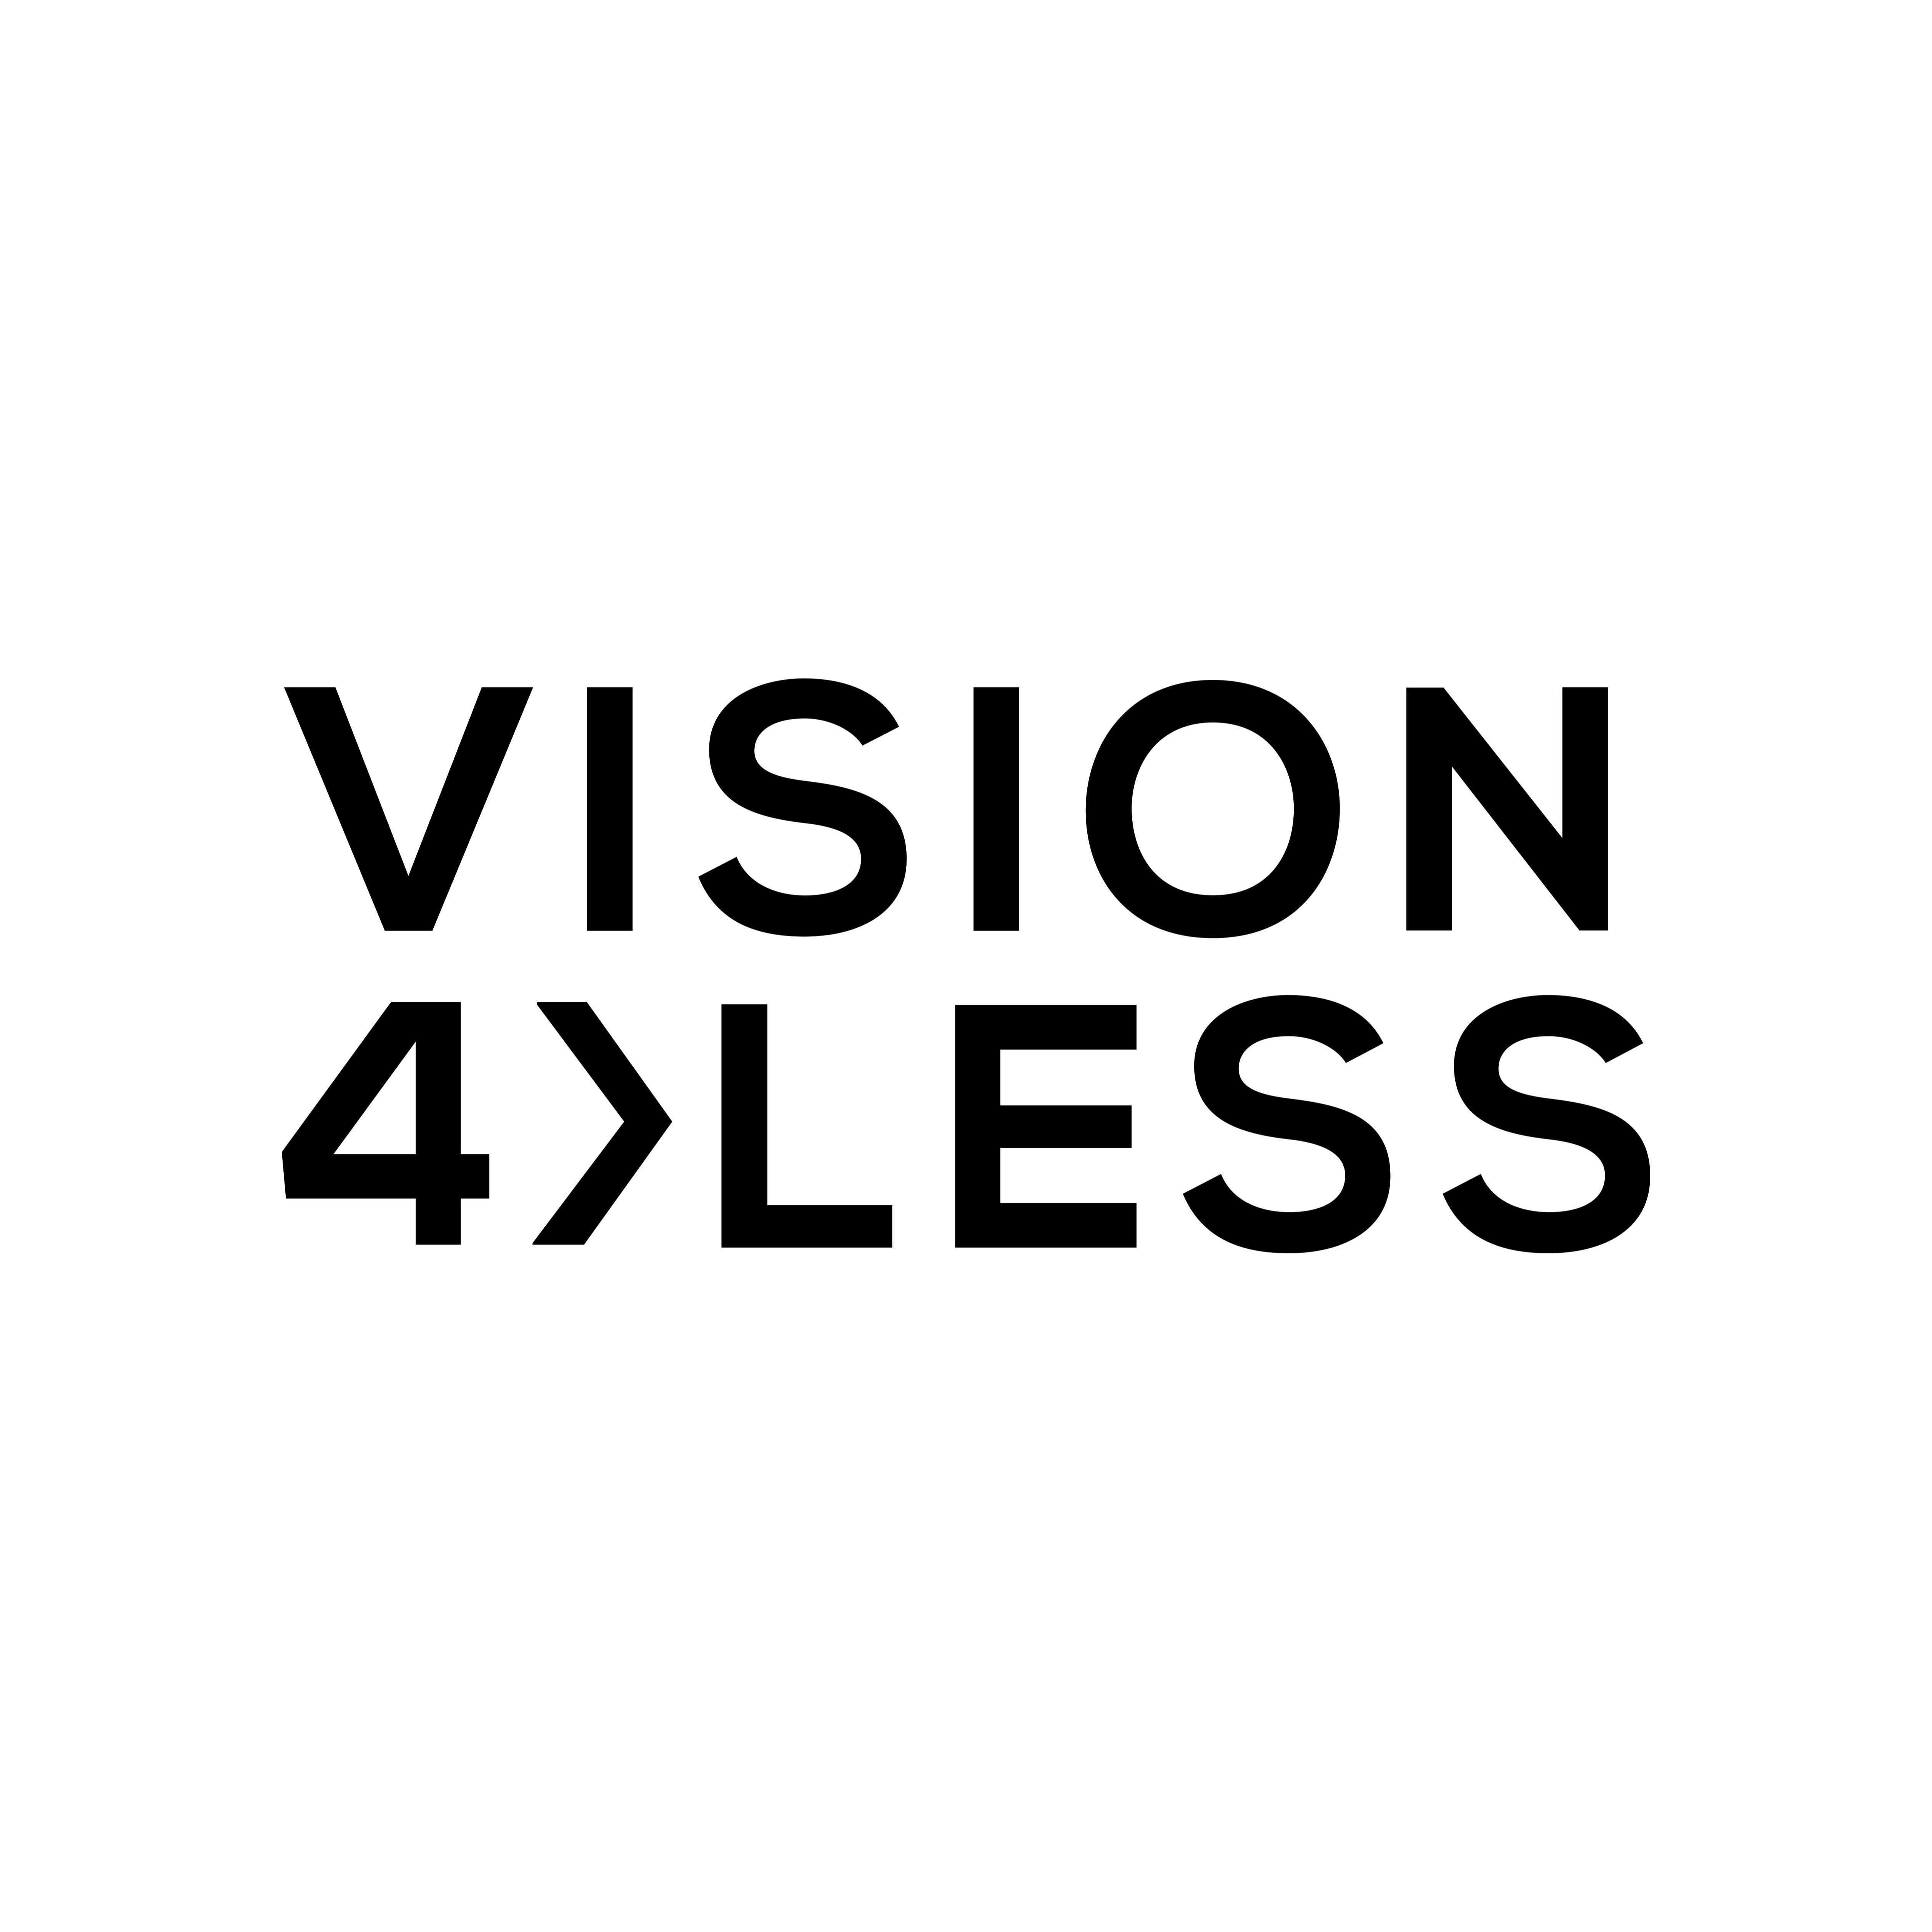 Vision 4 Less - Alexandria, LA 71301 - (318)449-4767 | ShowMeLocal.com